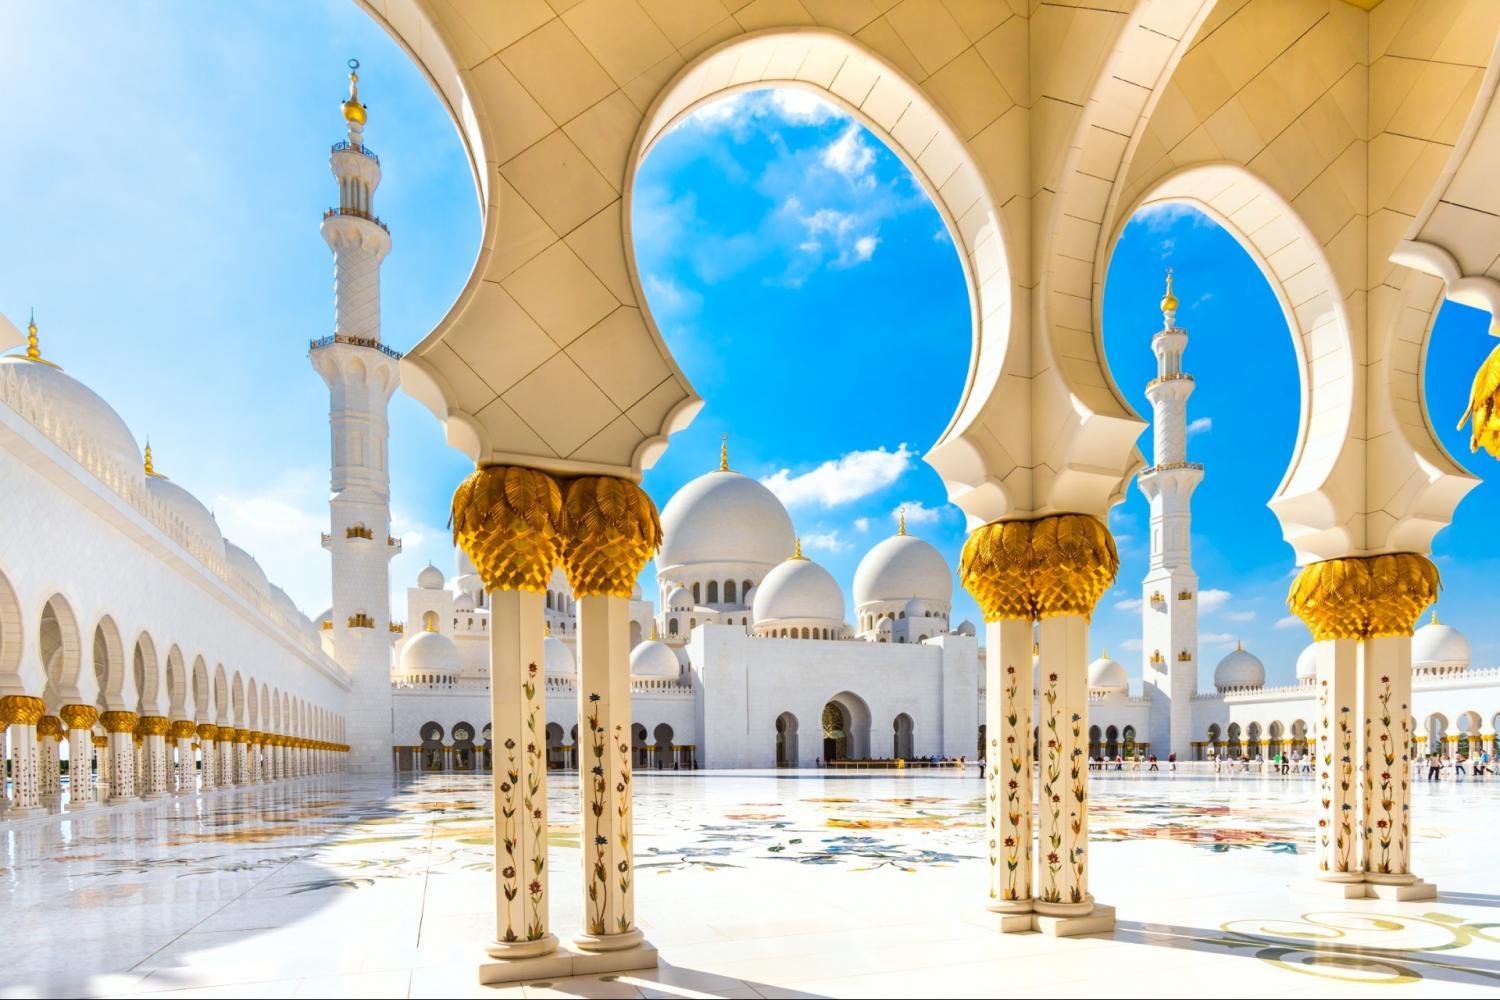 Abu-Dhabi-Mosque-&-Ferrari-World-from-Dubai-8